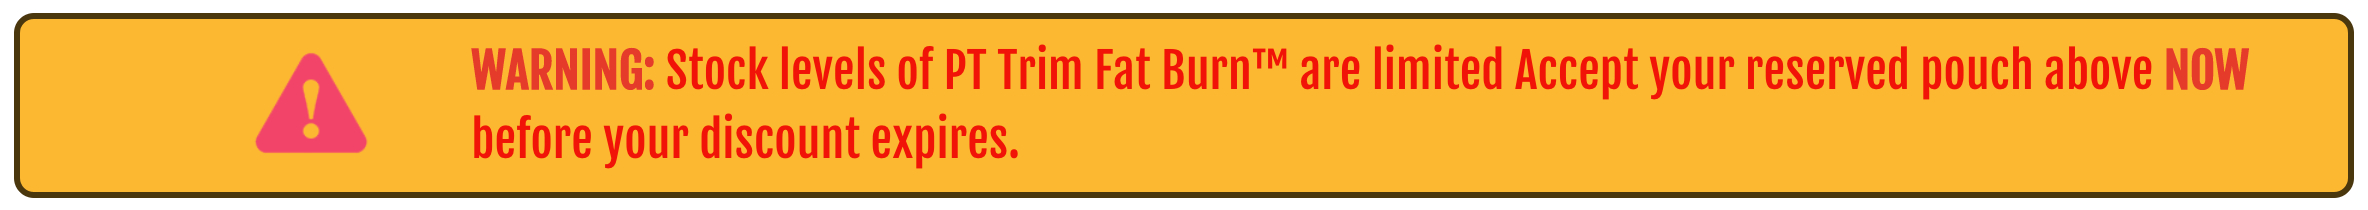 PT Trim Fat Burn - WARNING